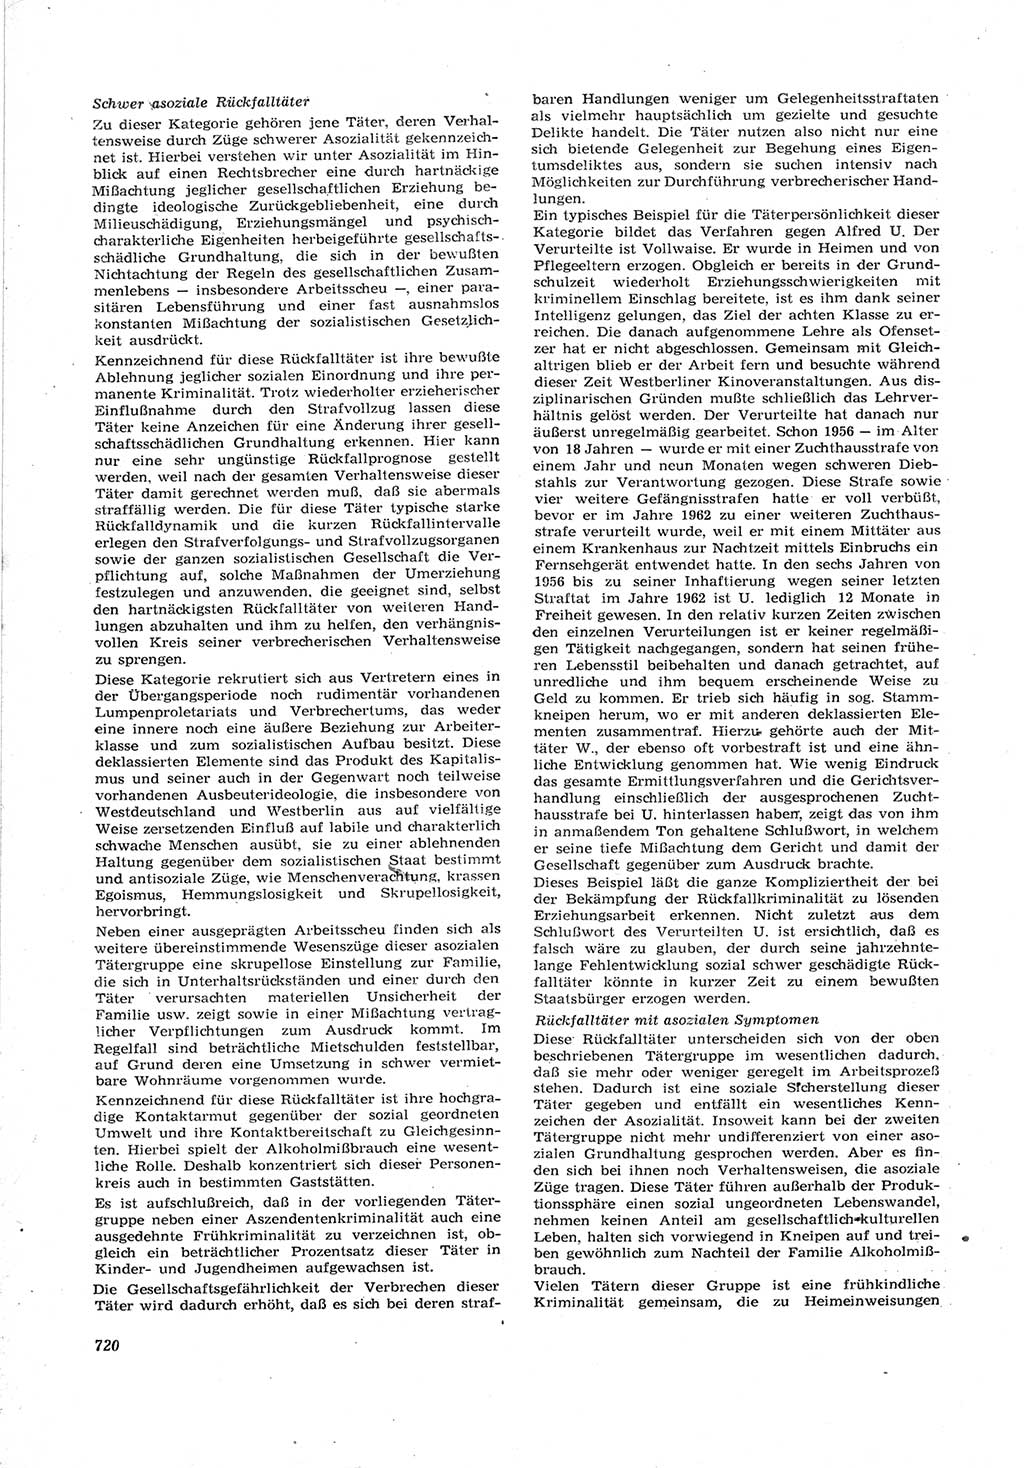 Neue Justiz (NJ), Zeitschrift für Recht und Rechtswissenschaft [Deutsche Demokratische Republik (DDR)], 17. Jahrgang 1963, Seite 720 (NJ DDR 1963, S. 720)